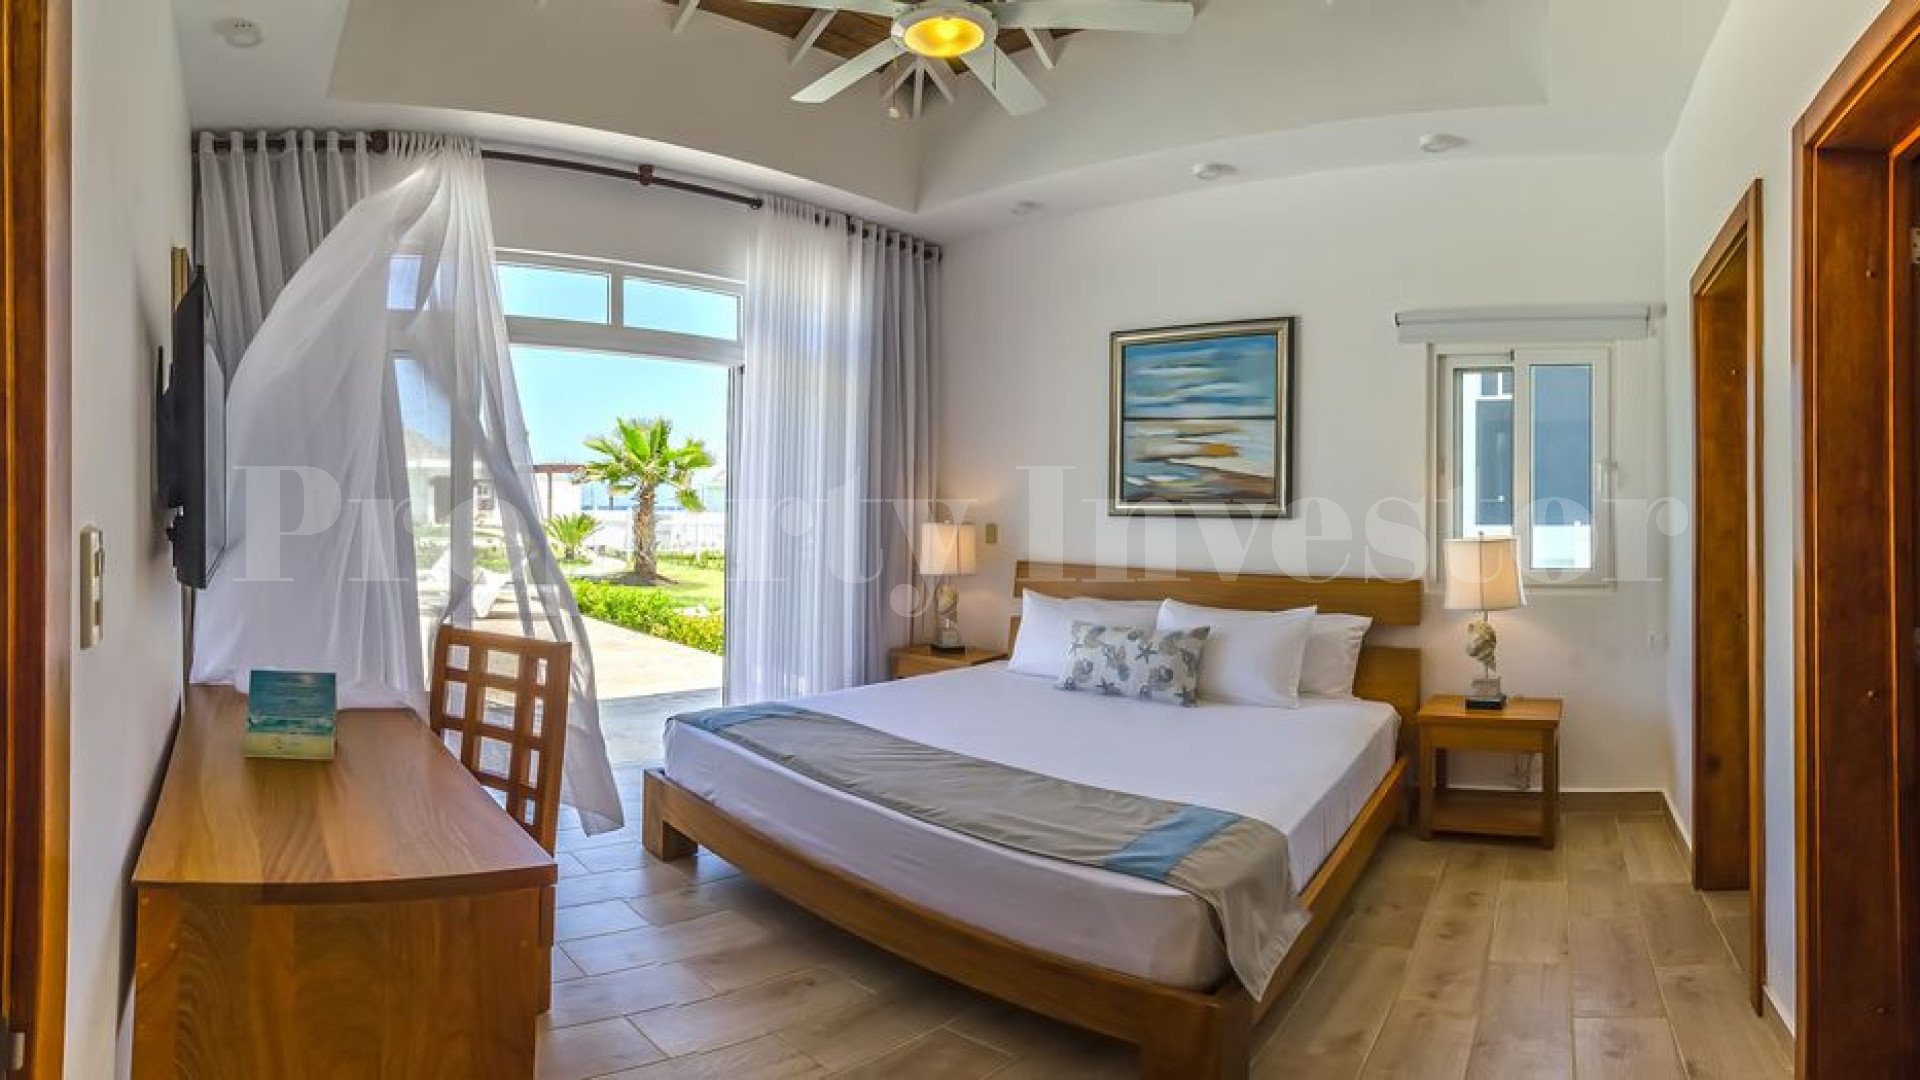 Вилла с 3 спальнями с видом на море в Доминиканской Республике с финансированием на 30 лет (Вилла 16)